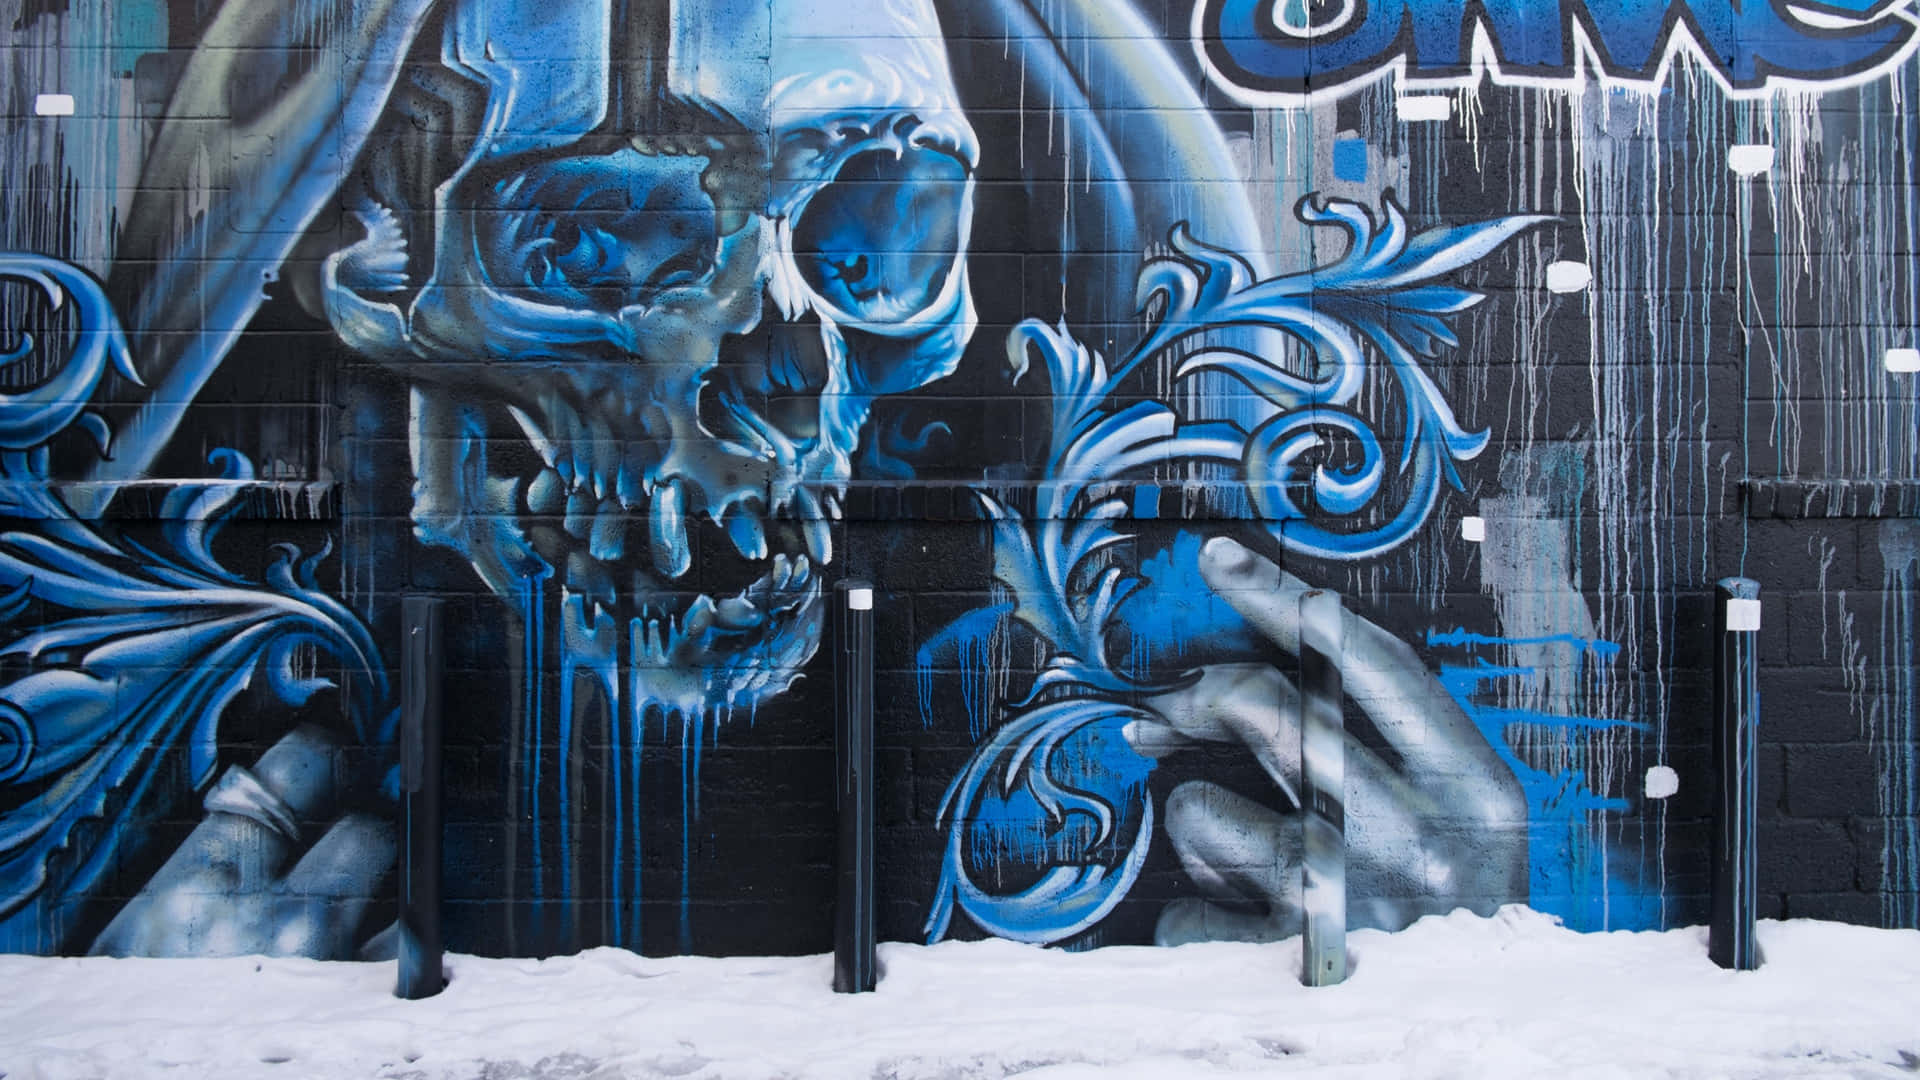 Graffitiluminosi E Colorati Di Un Artista Sconosciuto Sfondo